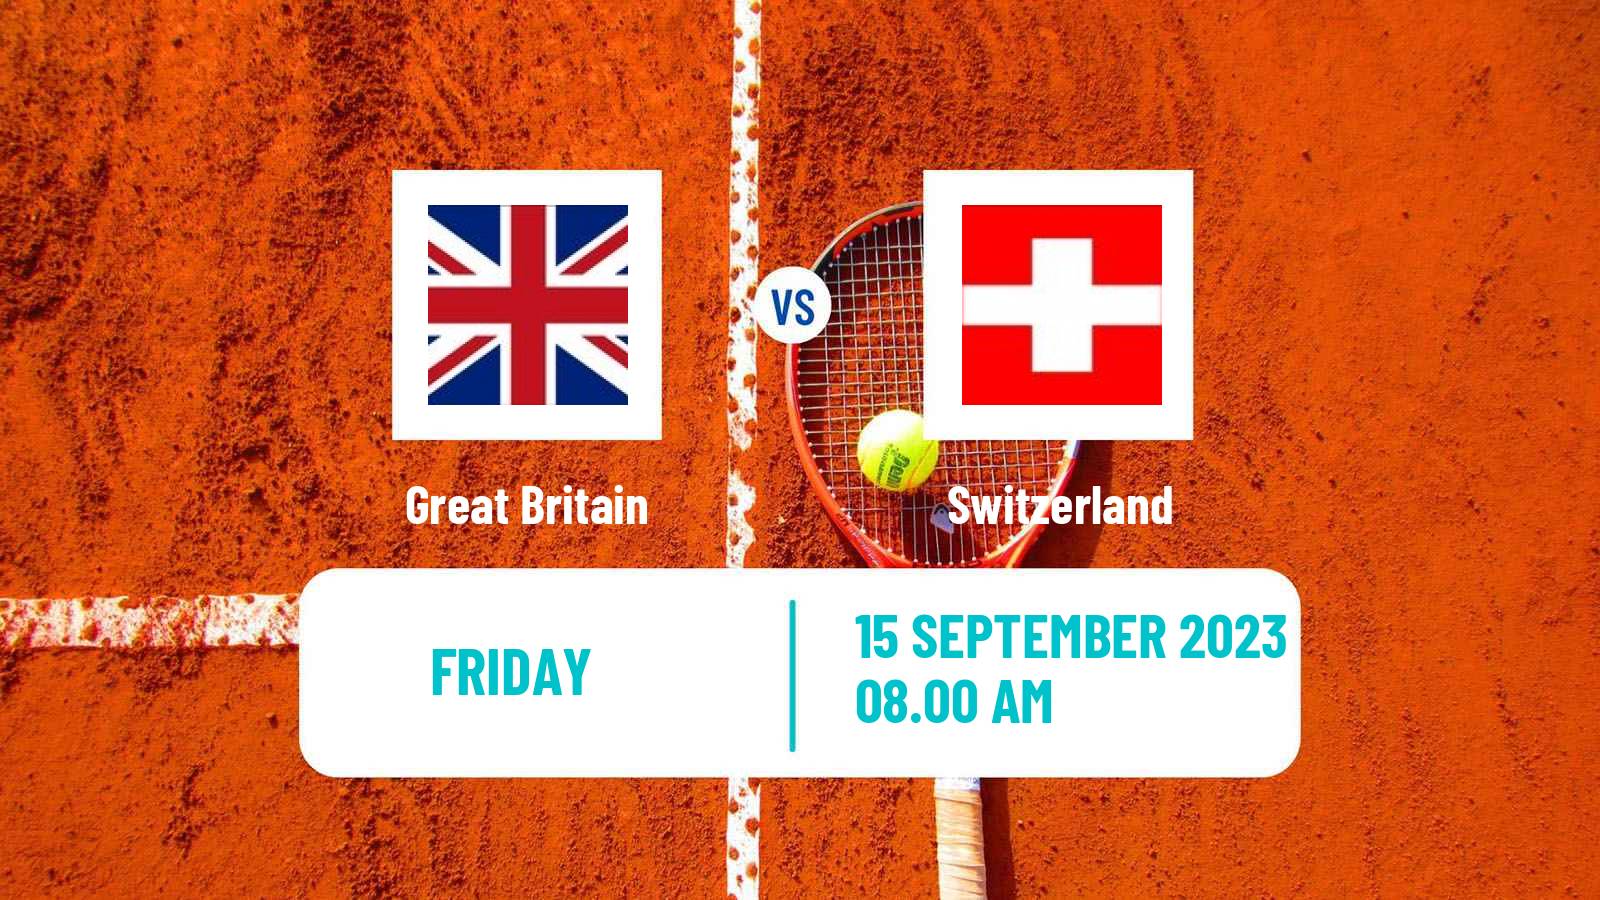 Tennis Davis Cup - World Group Teams Great Britain - Switzerland